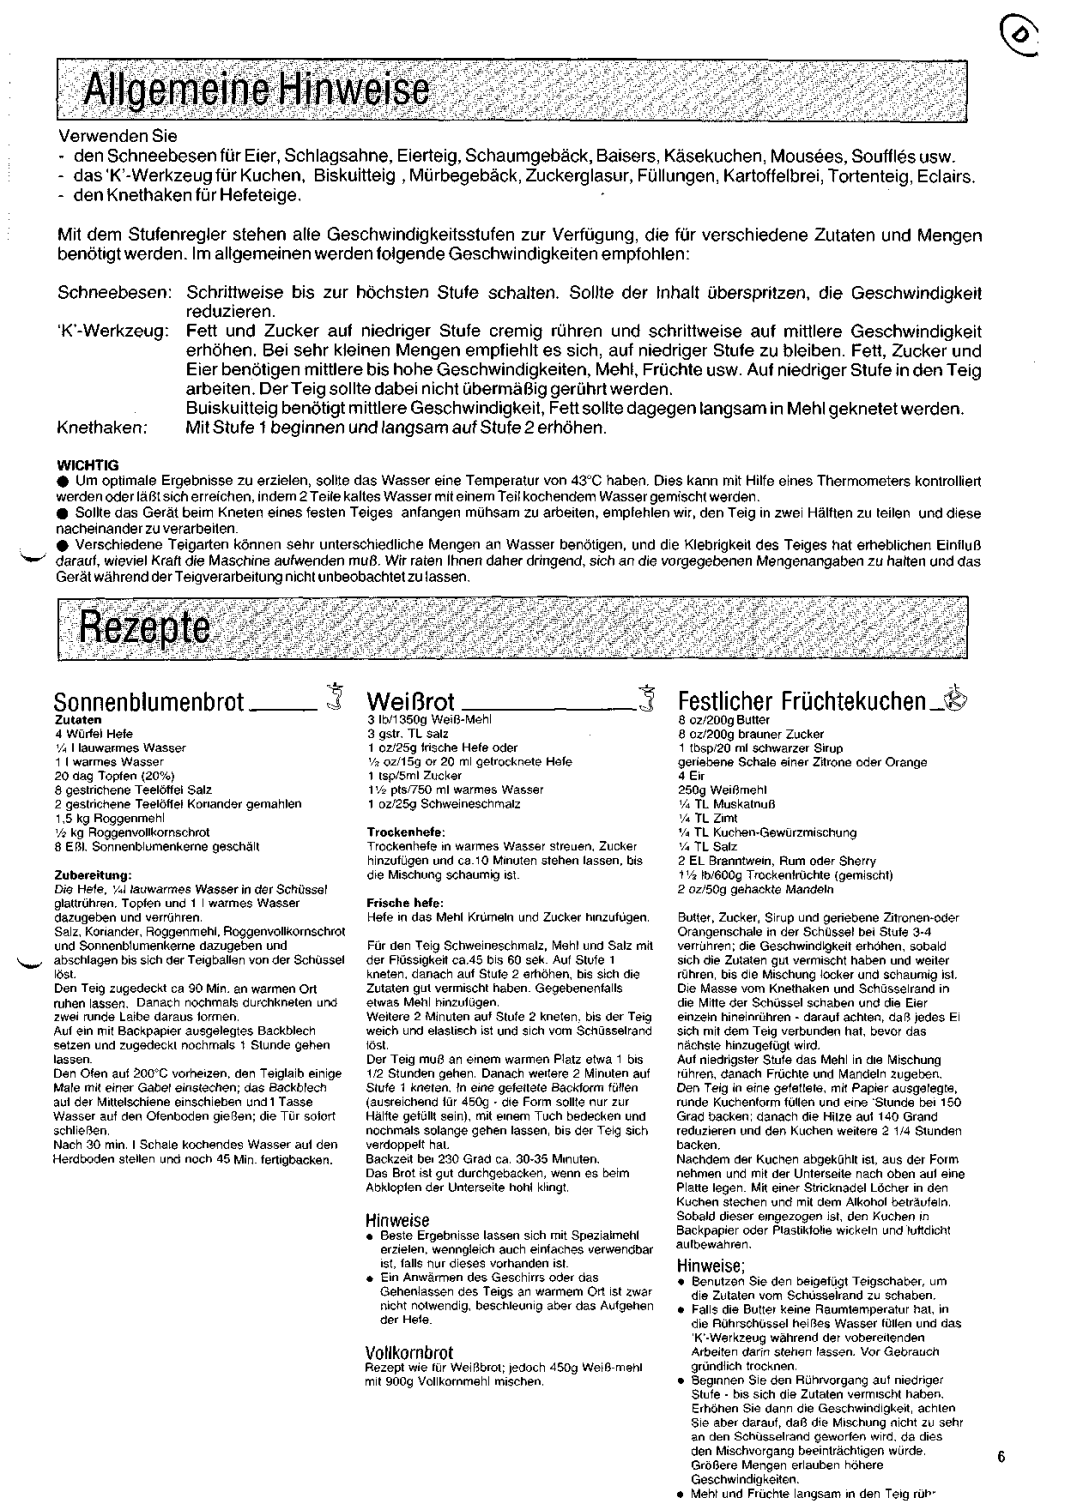 Kenwood KM200 manual Allgemeine Hinweise, Rezepte, Sonnenblumenbrot, WeiBrot, Festlicher Fruchtekuchen_w 